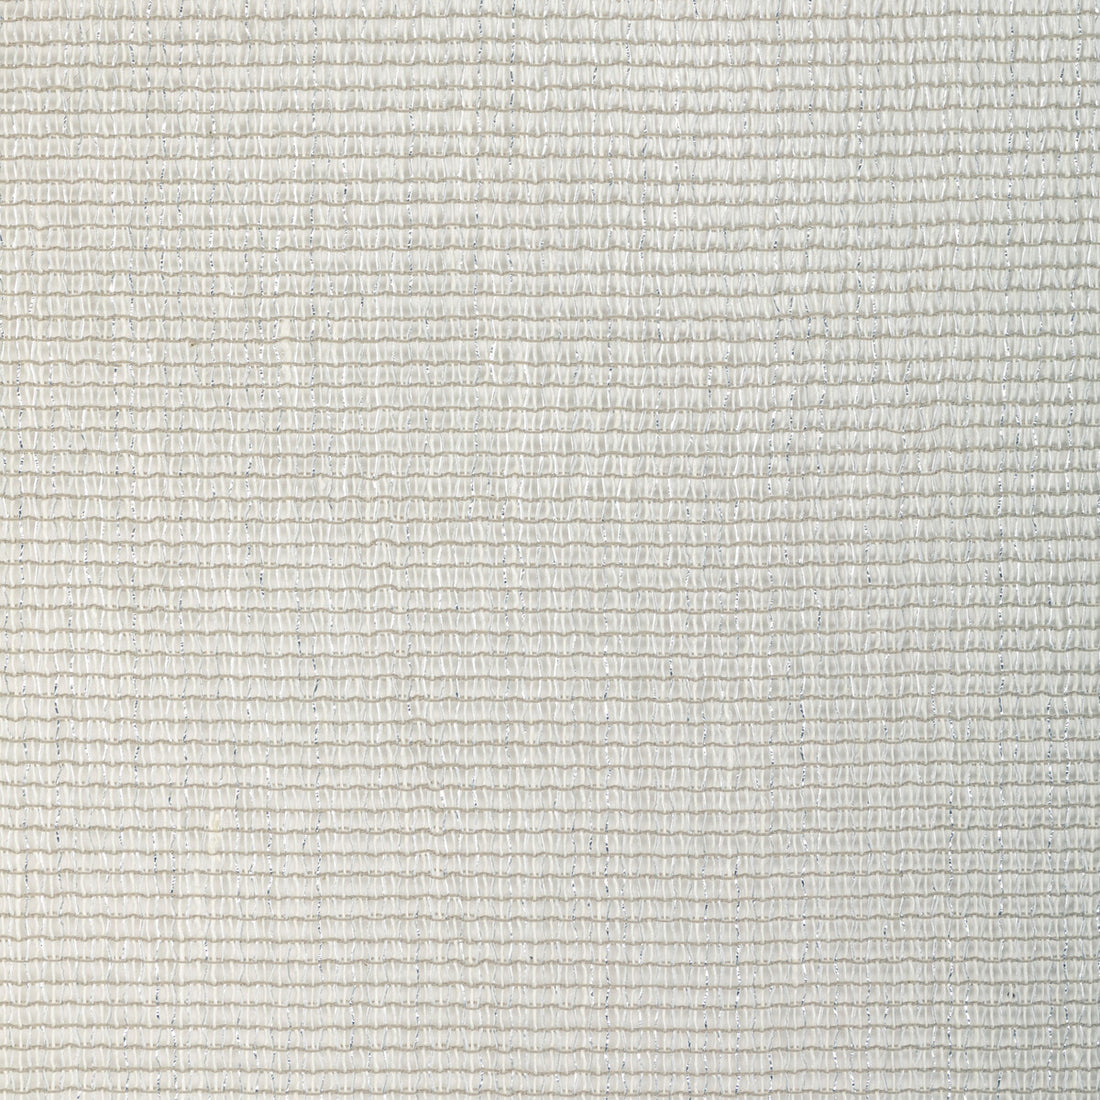 Kravet Design fabric in 4918-1101 color - pattern 4918.1101.0 - by Kravet Design